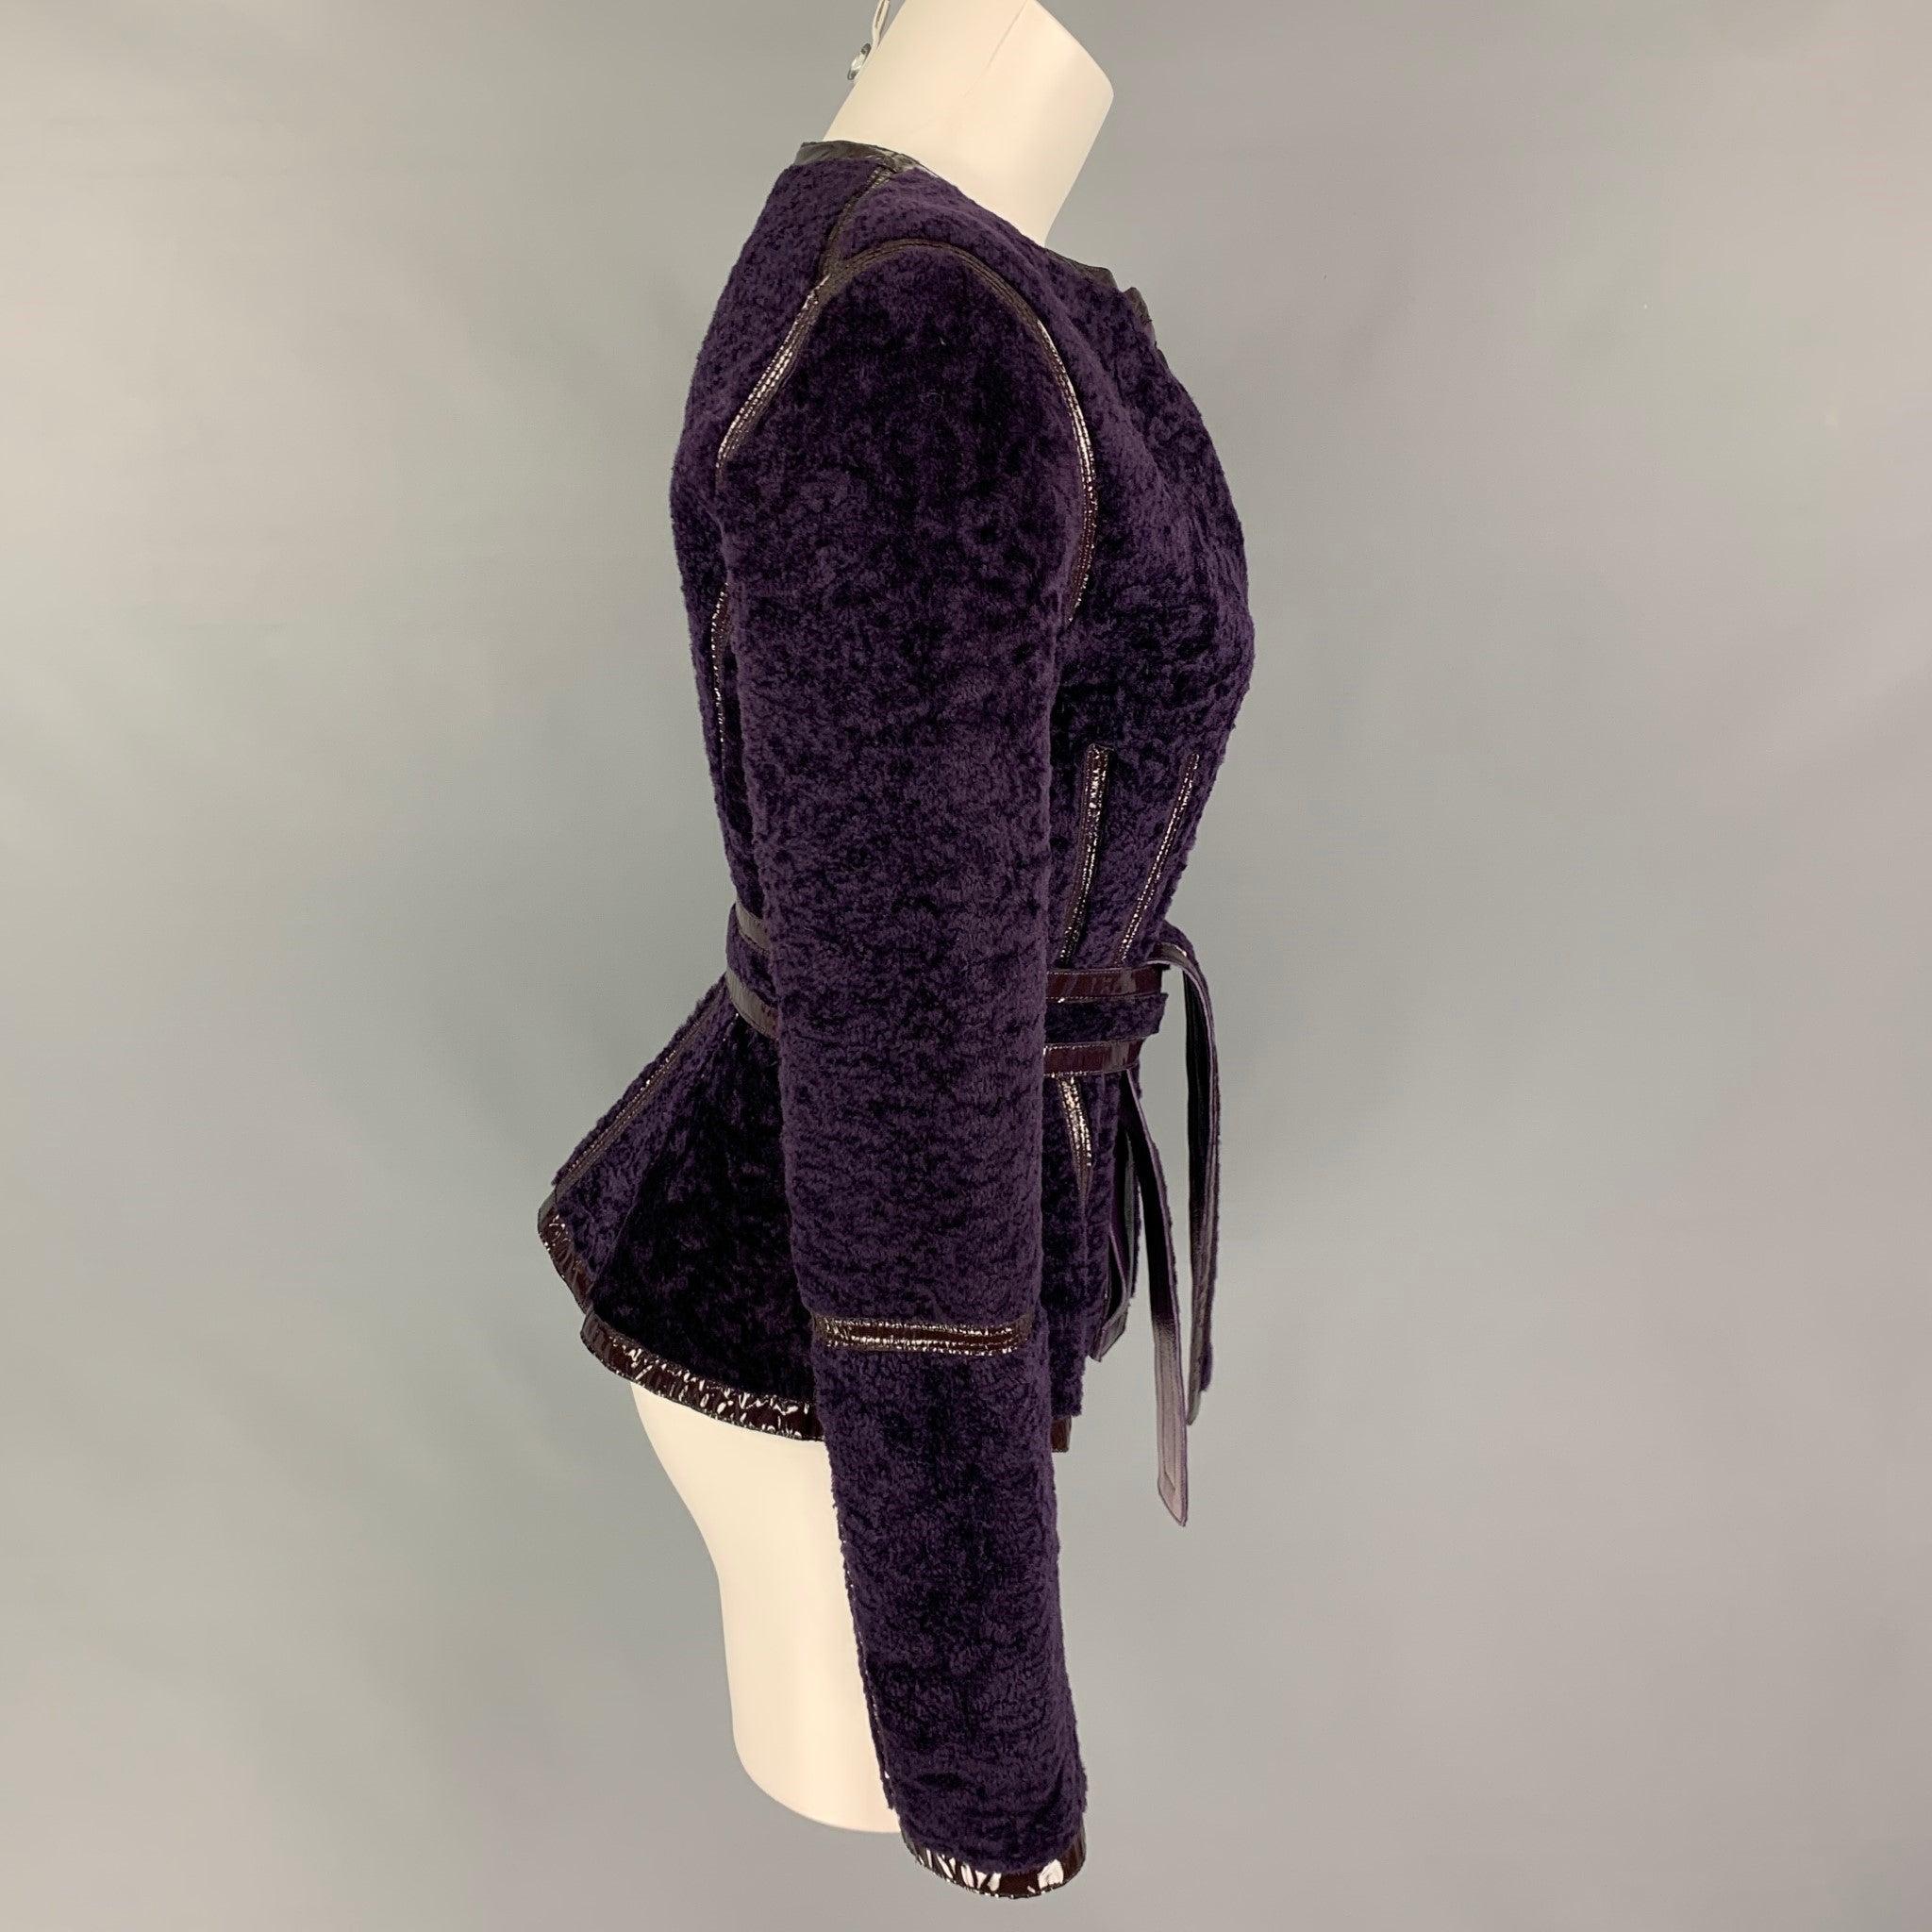 La veste YVES SAINT LAURENT se présente dans un shearling violet avec un motif en cuir réversible, des bordures en cuir verni, un ceinturage et une fermeture boutonnée.
Neuf avec étiquettes.
 

Marqué :   F 38  

Mesures : 
 
Épaule : 15.5 pouces 